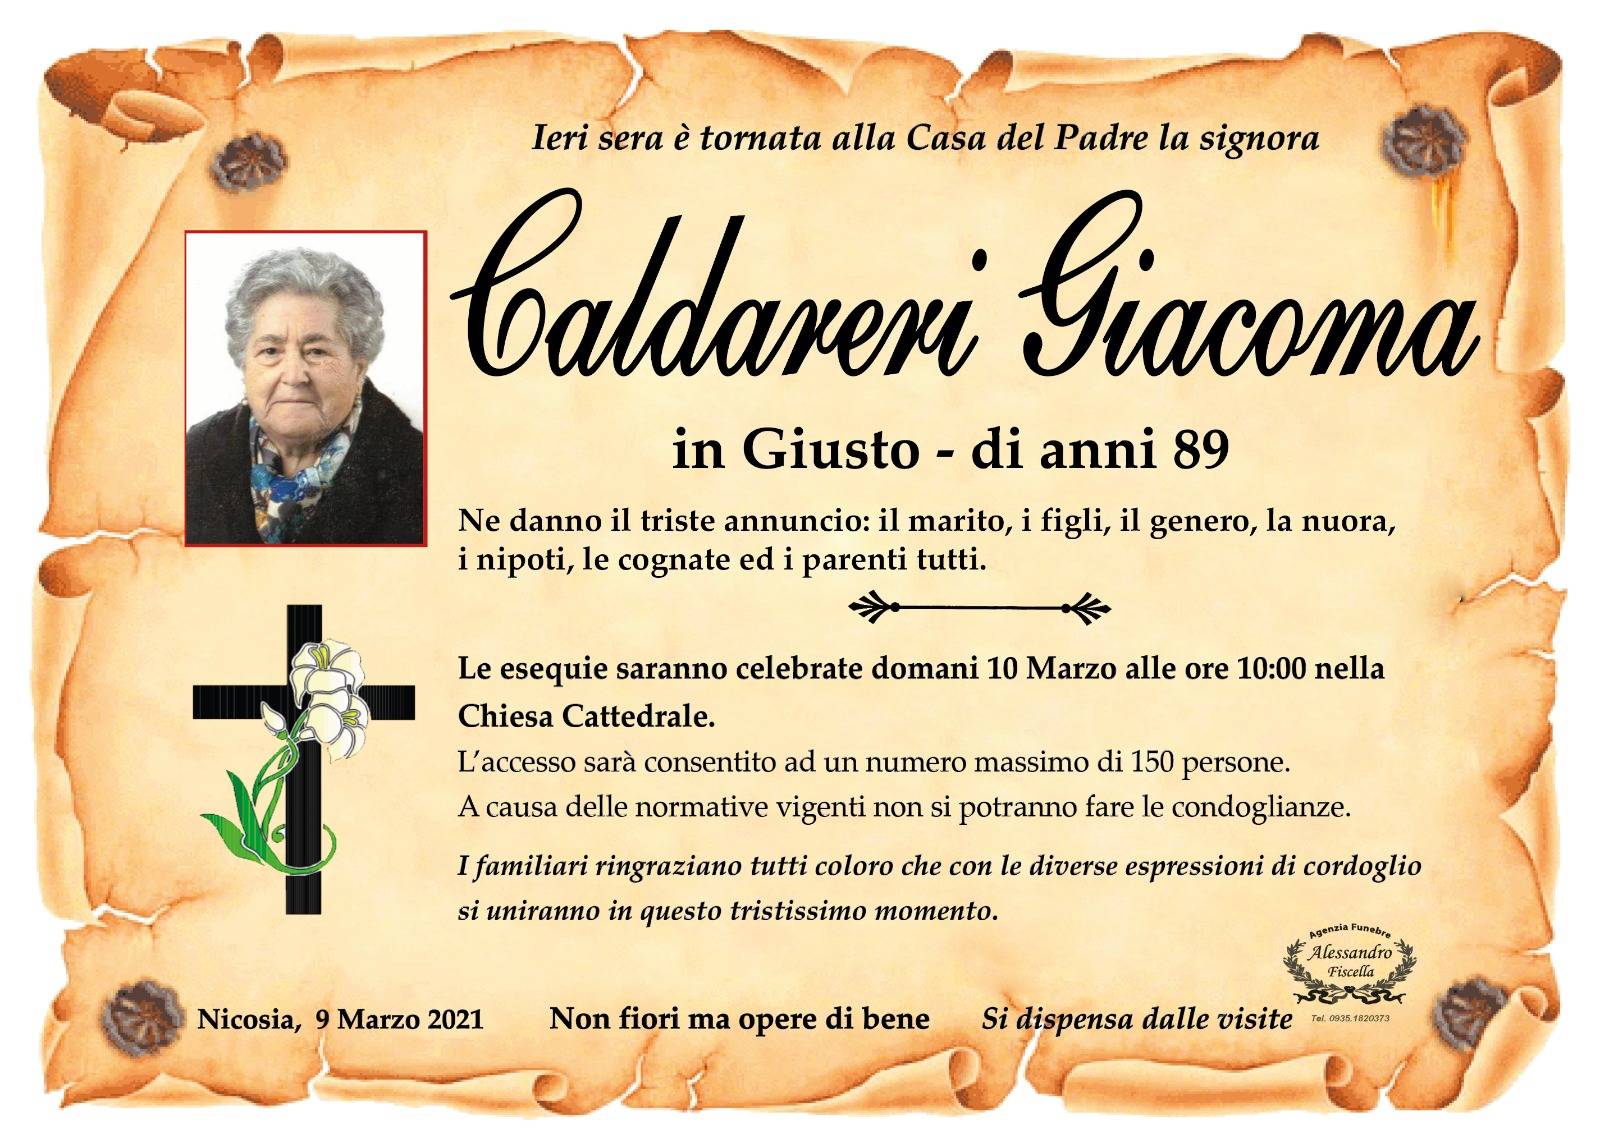 Giacoma Caldareri